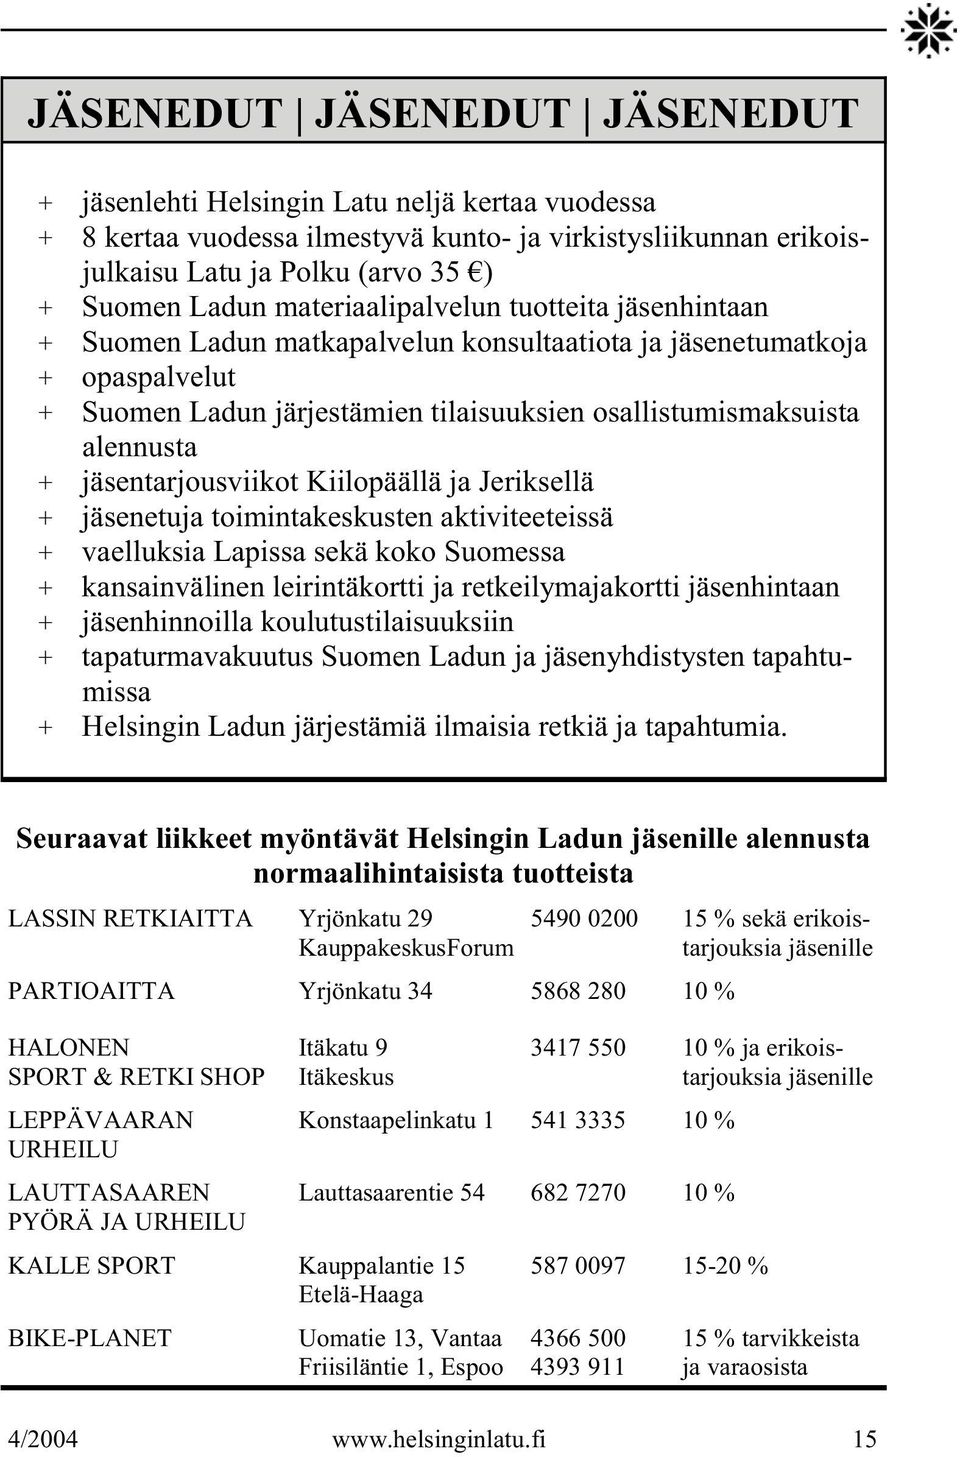 jäsentarjousviikot Kiilopäällä ja Jeriksellä + jäsenetuja toimintakeskusten aktiviteeteissä + vaelluksia Lapissa sekä koko Suomessa + kansainvälinen leirintäkortti ja retkeilymajakortti jäsenhintaan